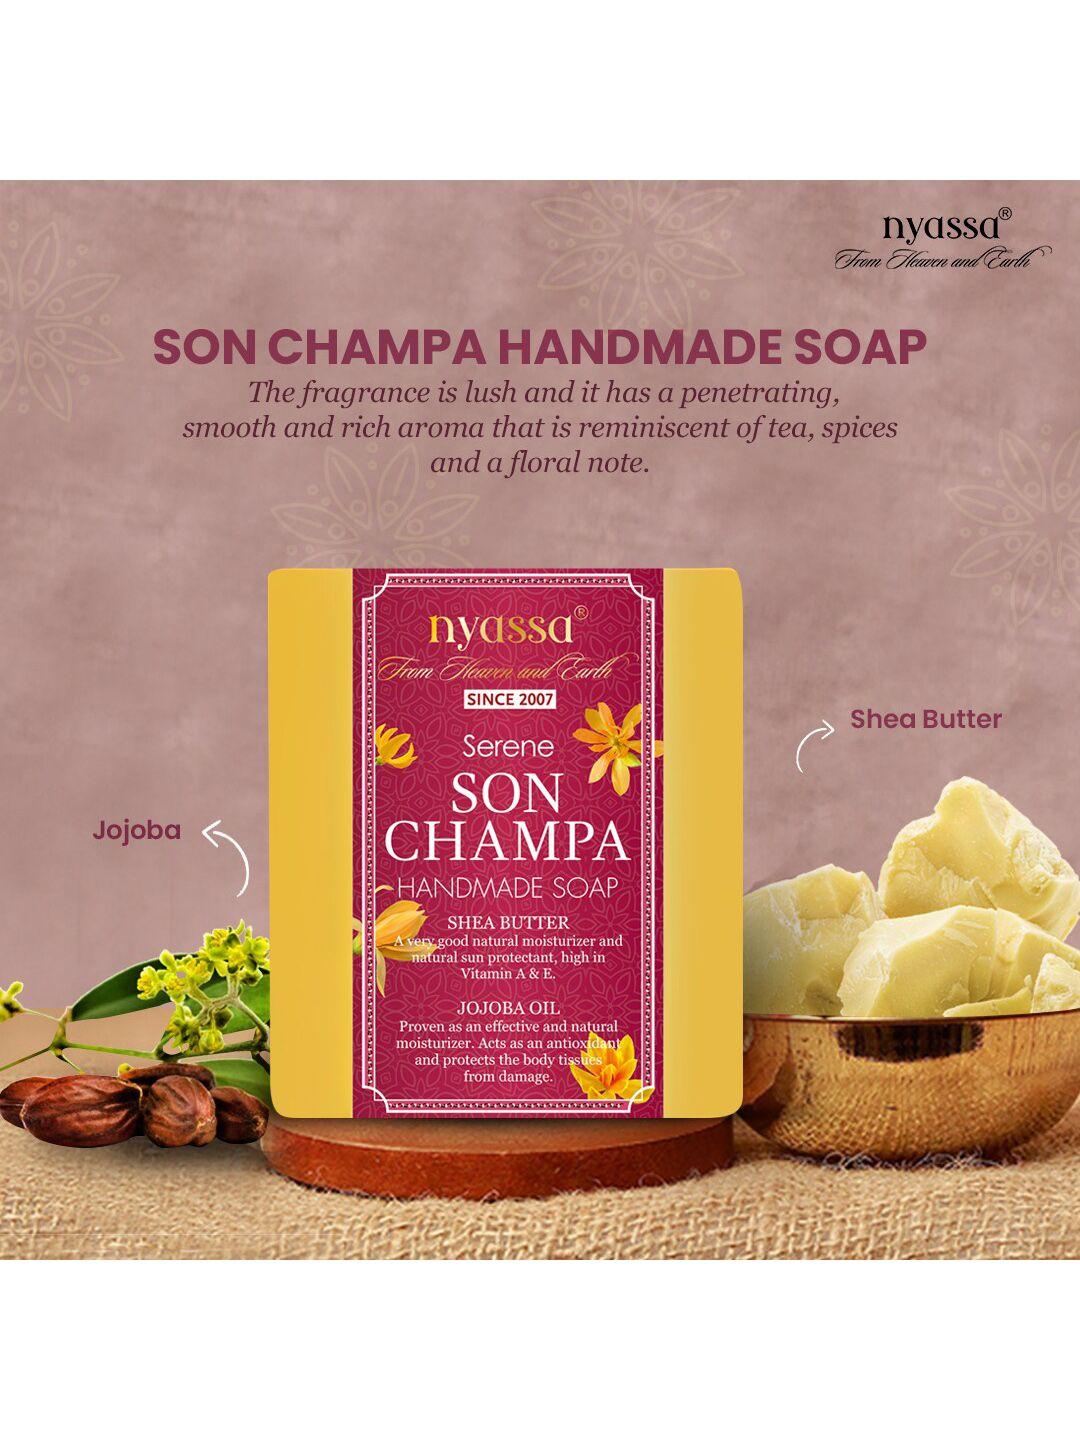 nyassa serene son champa handmade soap with shea butter 75 g